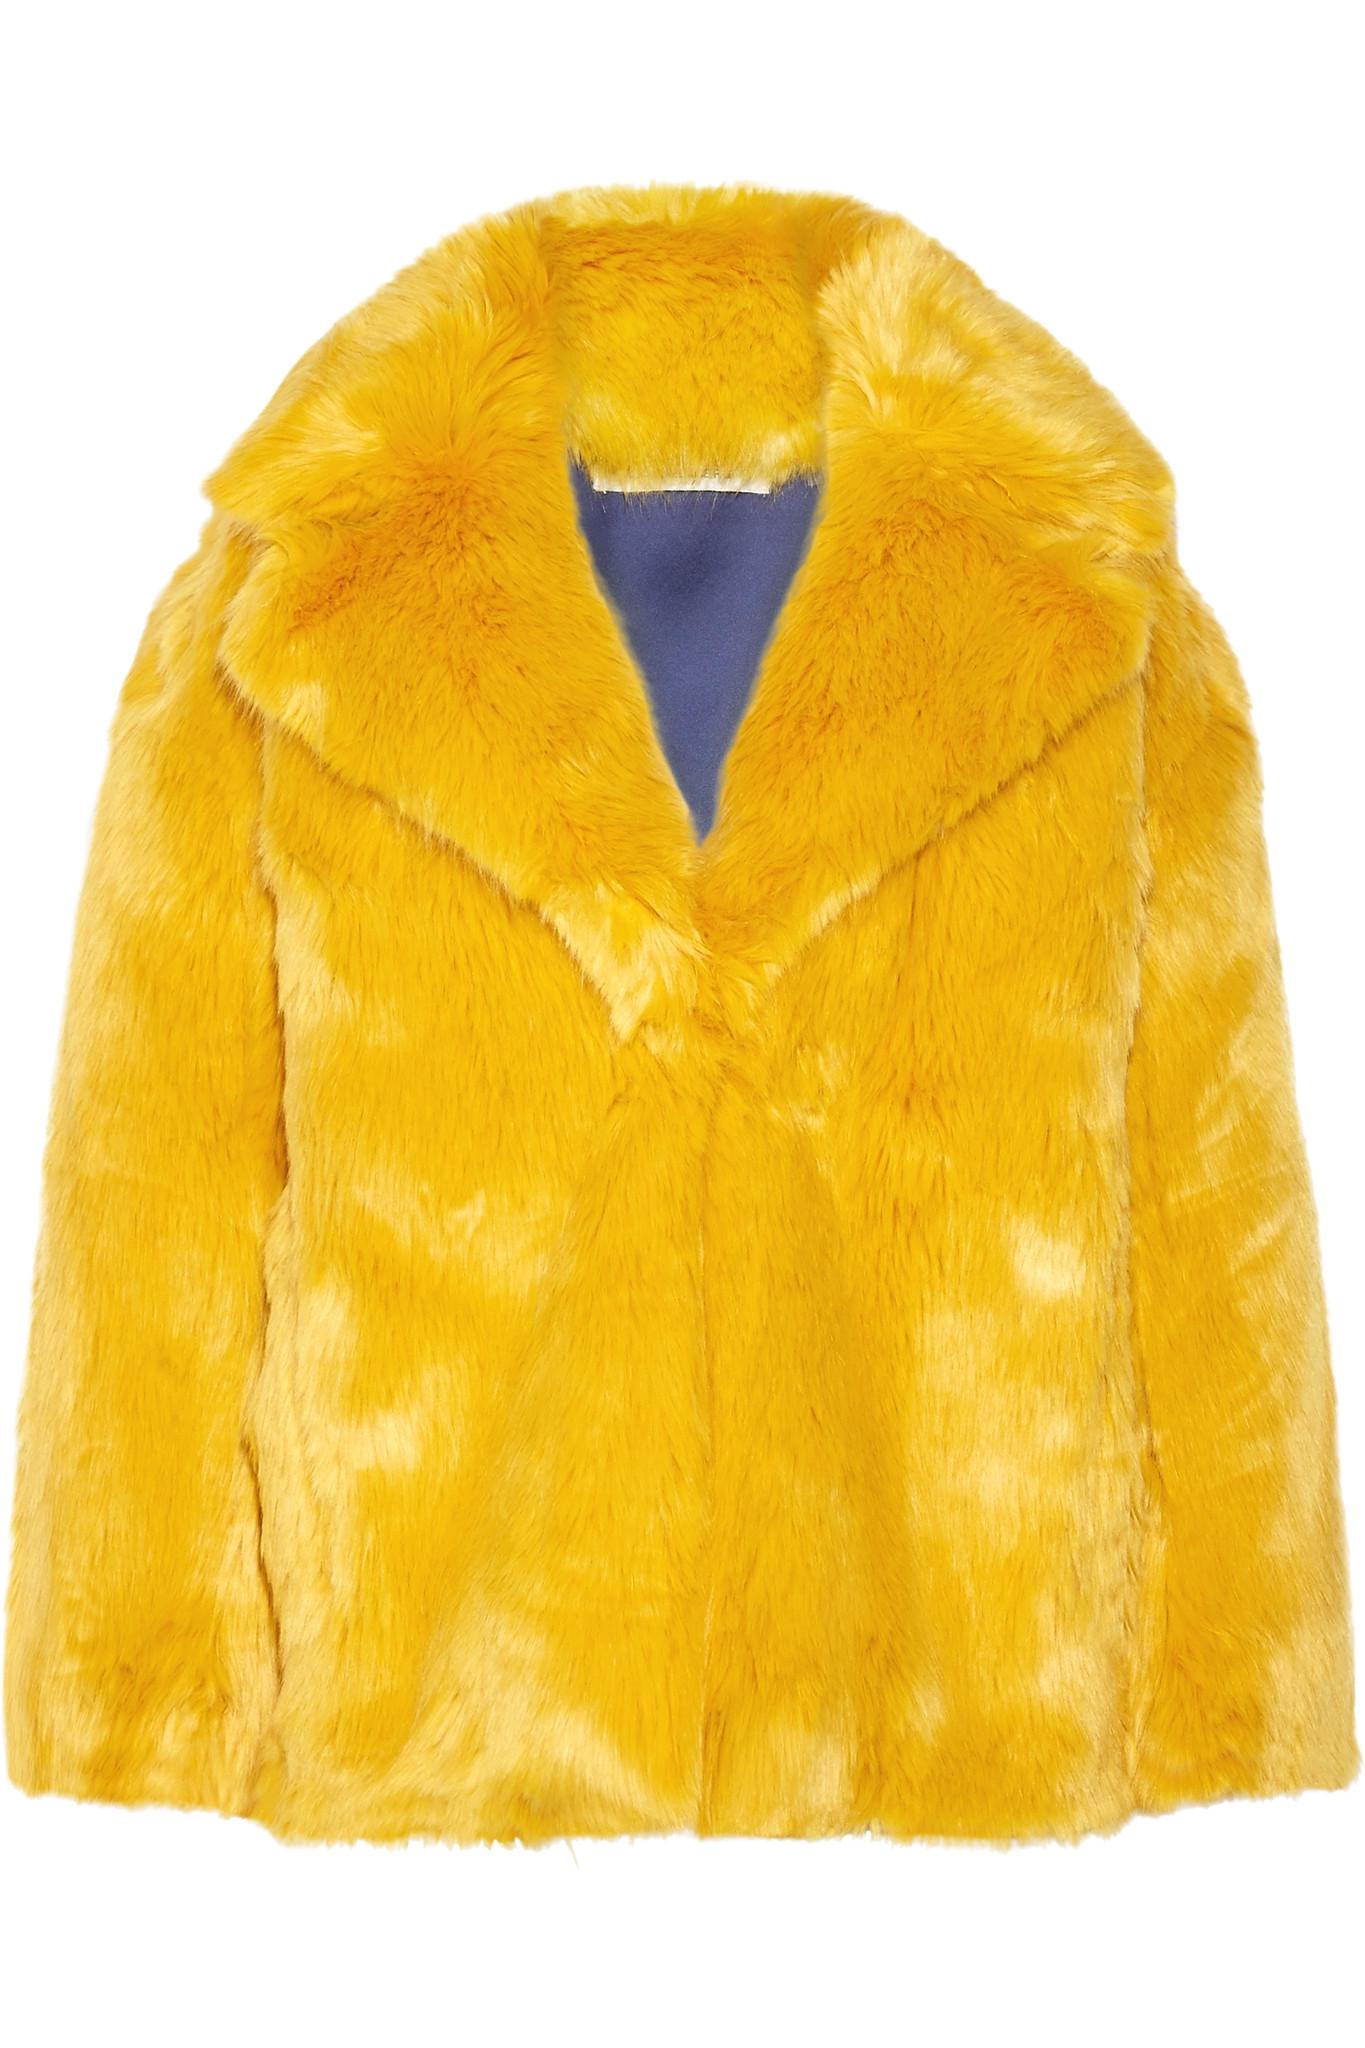 Lyst - Diane Von Furstenberg Faux Fur Coat in Yellow